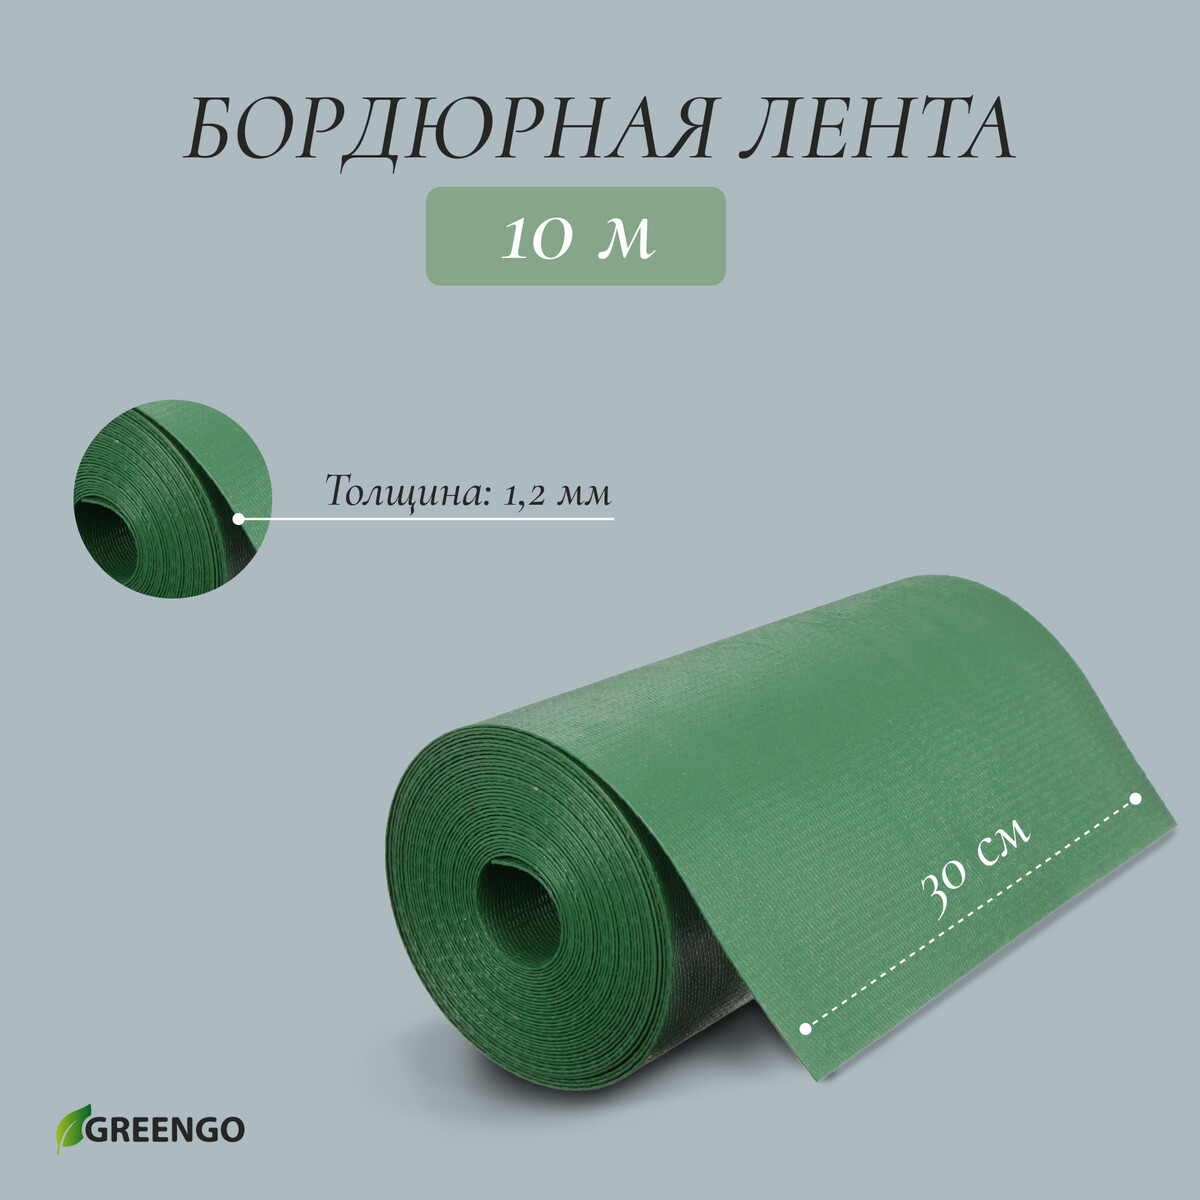 Лента бордюрная, 0.3 × 10 м, толщина 1.2 мм, пластиковая, зеленая, greengo лента бордюрная 0 2 × 9 м толщина 1 2 мм пластиковая фигурная коричневая